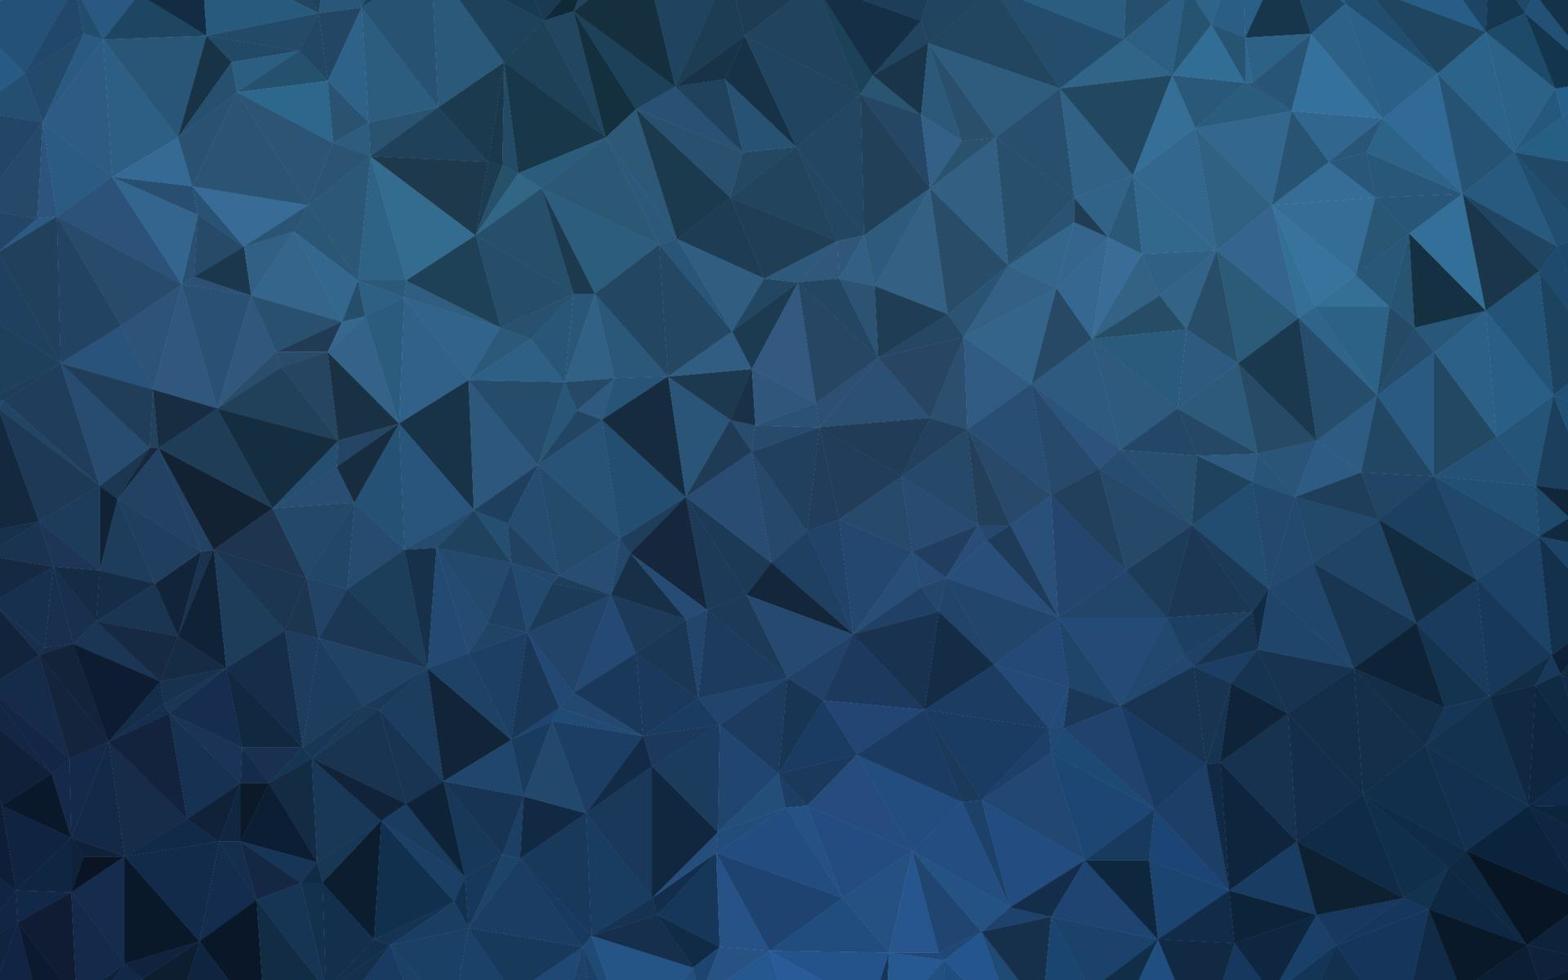 motif polygonal de vecteur bleu foncé.